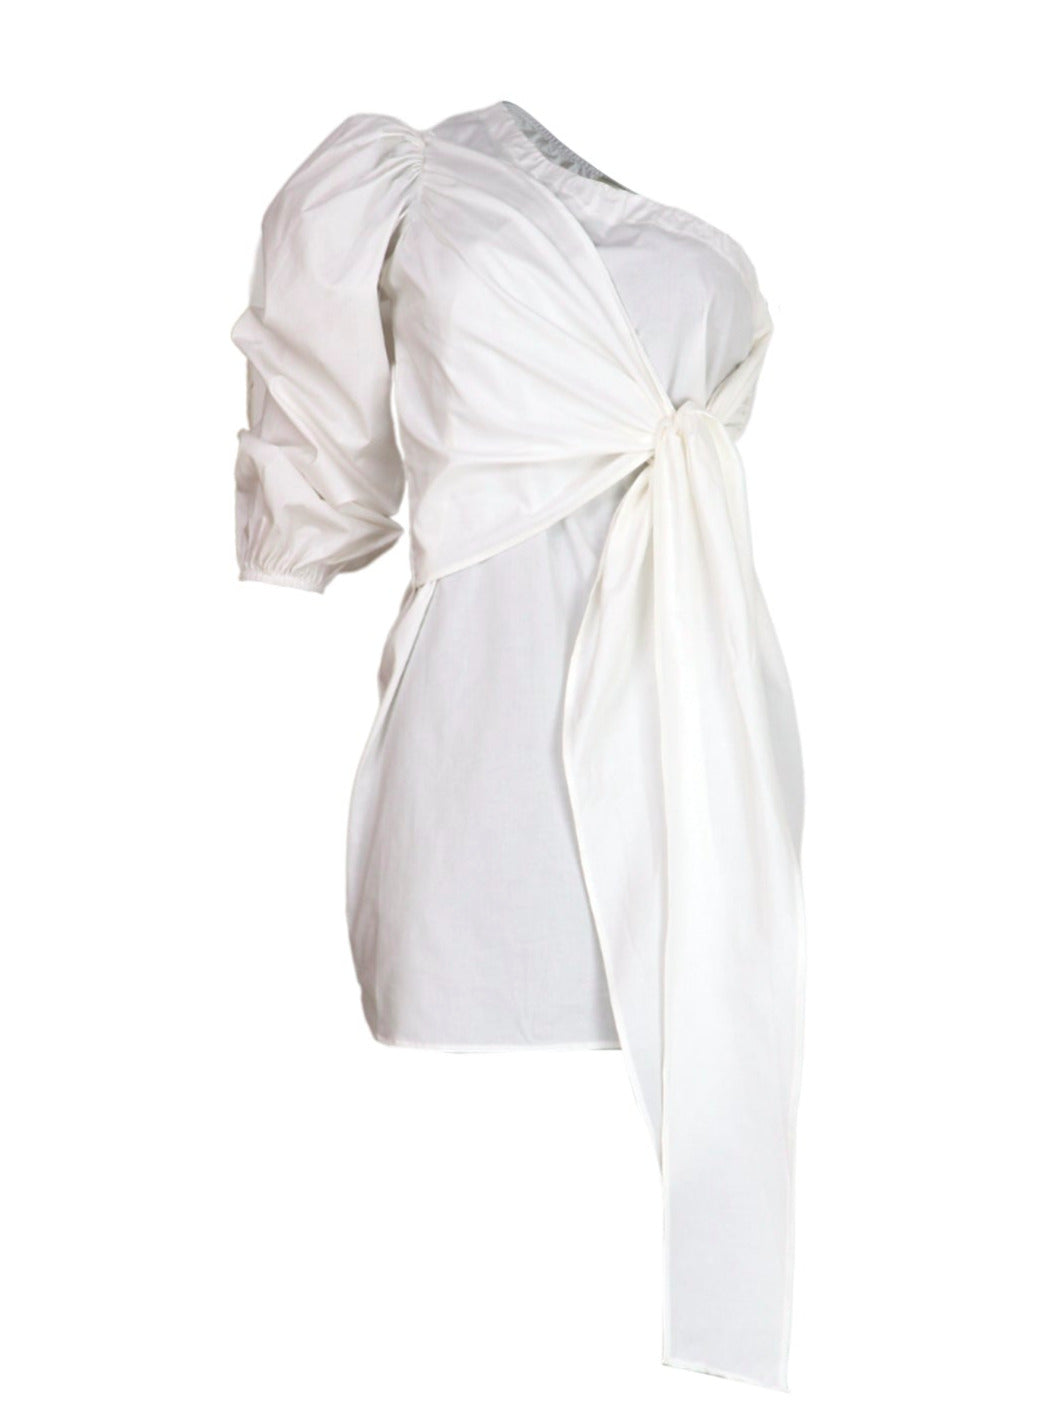 Vestido corto blanco con moño